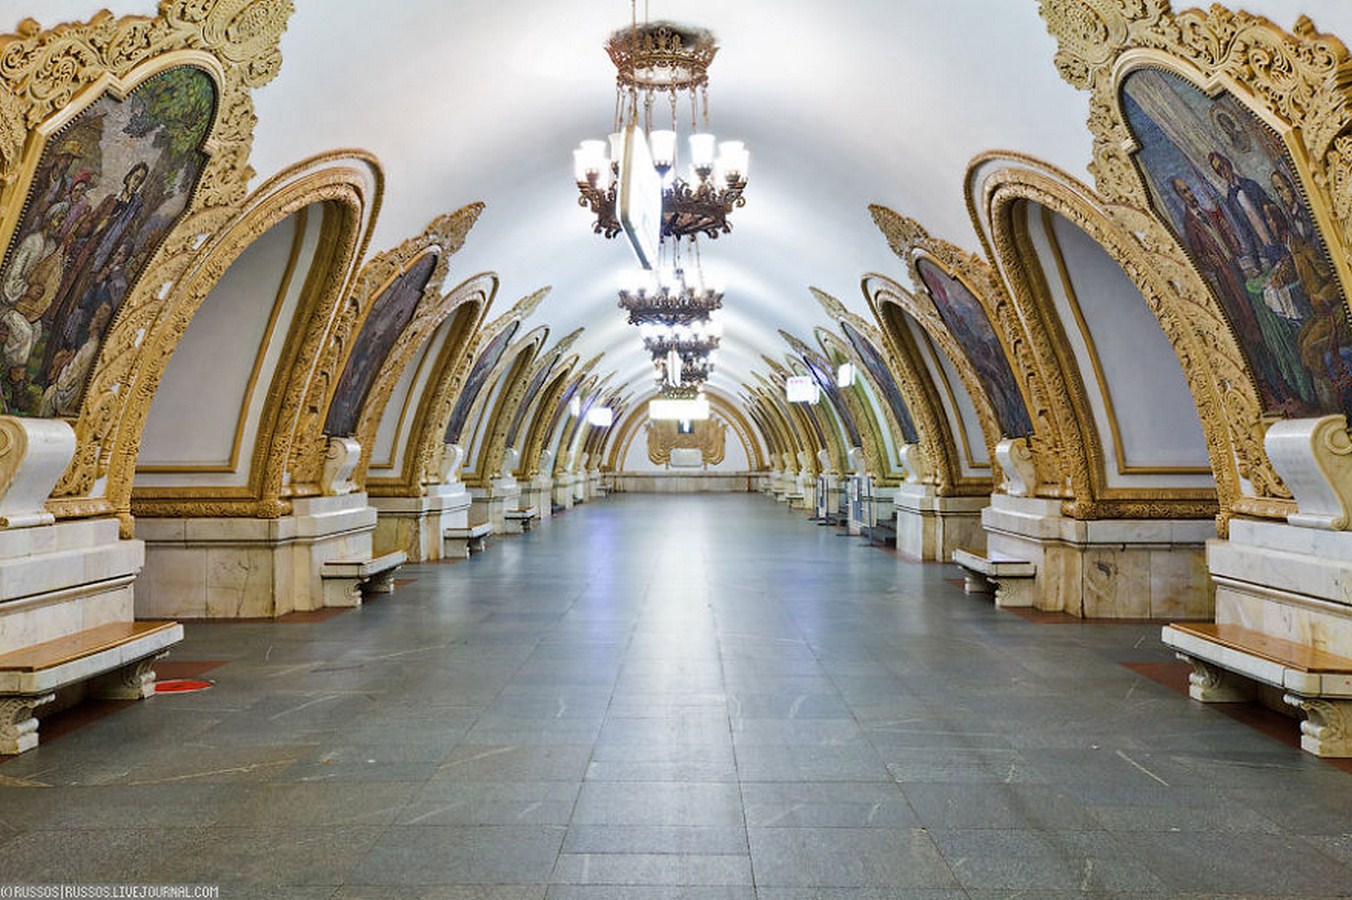 Московское метро станция Киевская